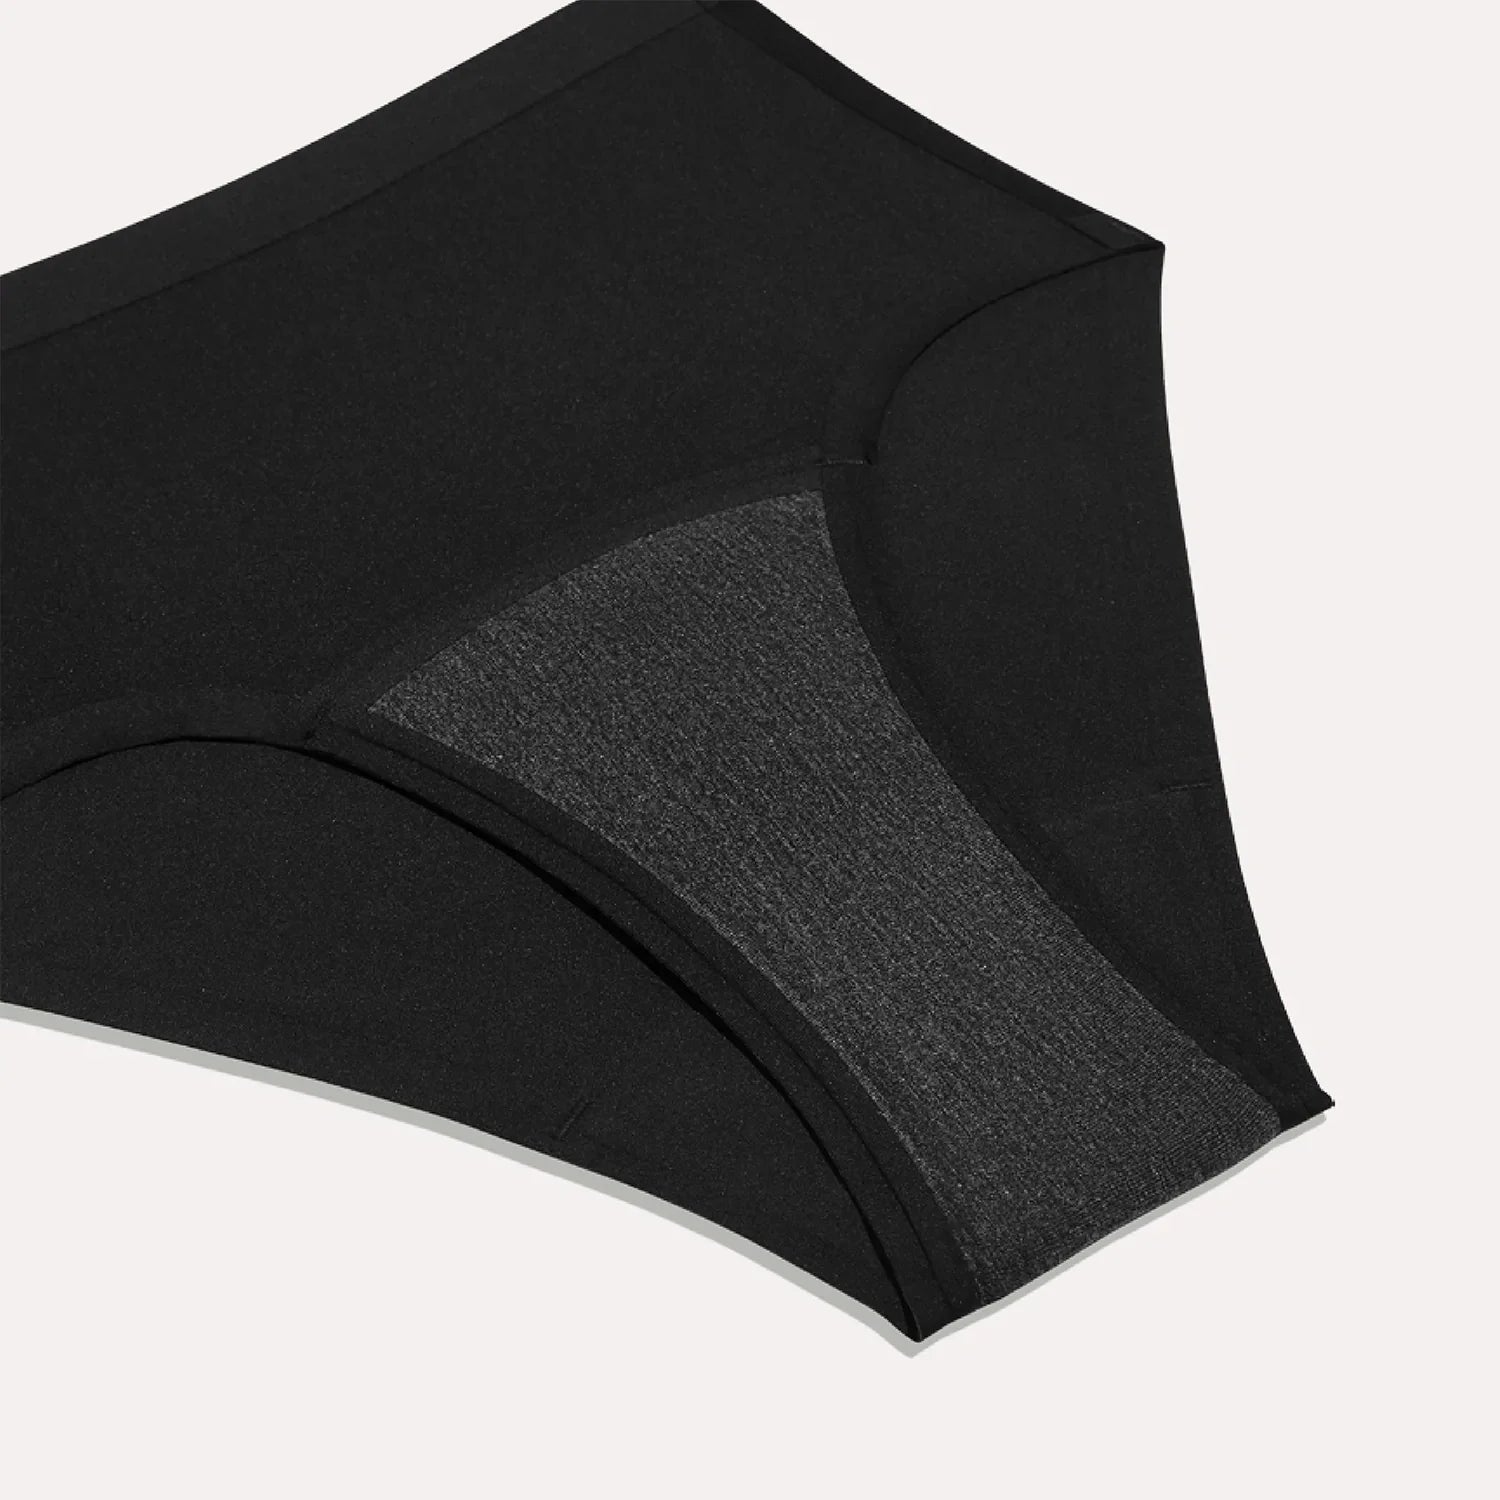  KNIX Super Leakproof High Rise Underwear - Period Underwear  For Women - Midnight, XXXX-Large